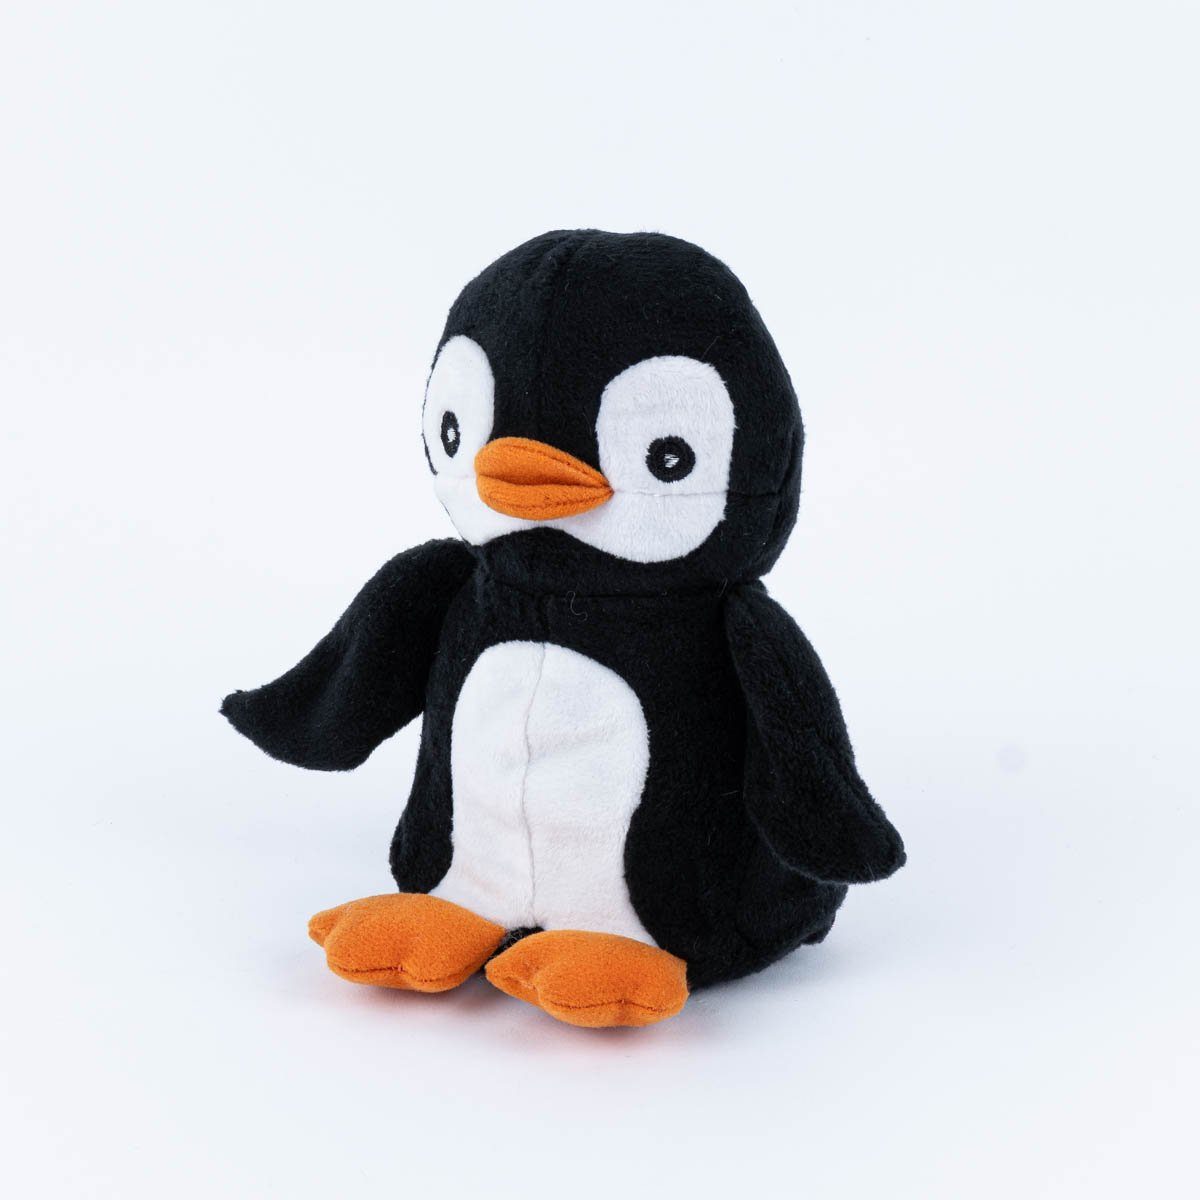 Wärmekissen schwarz Pinguin Plush orange Habibi mit Wärmetier Füllung Plush Habibi Hirse weiß